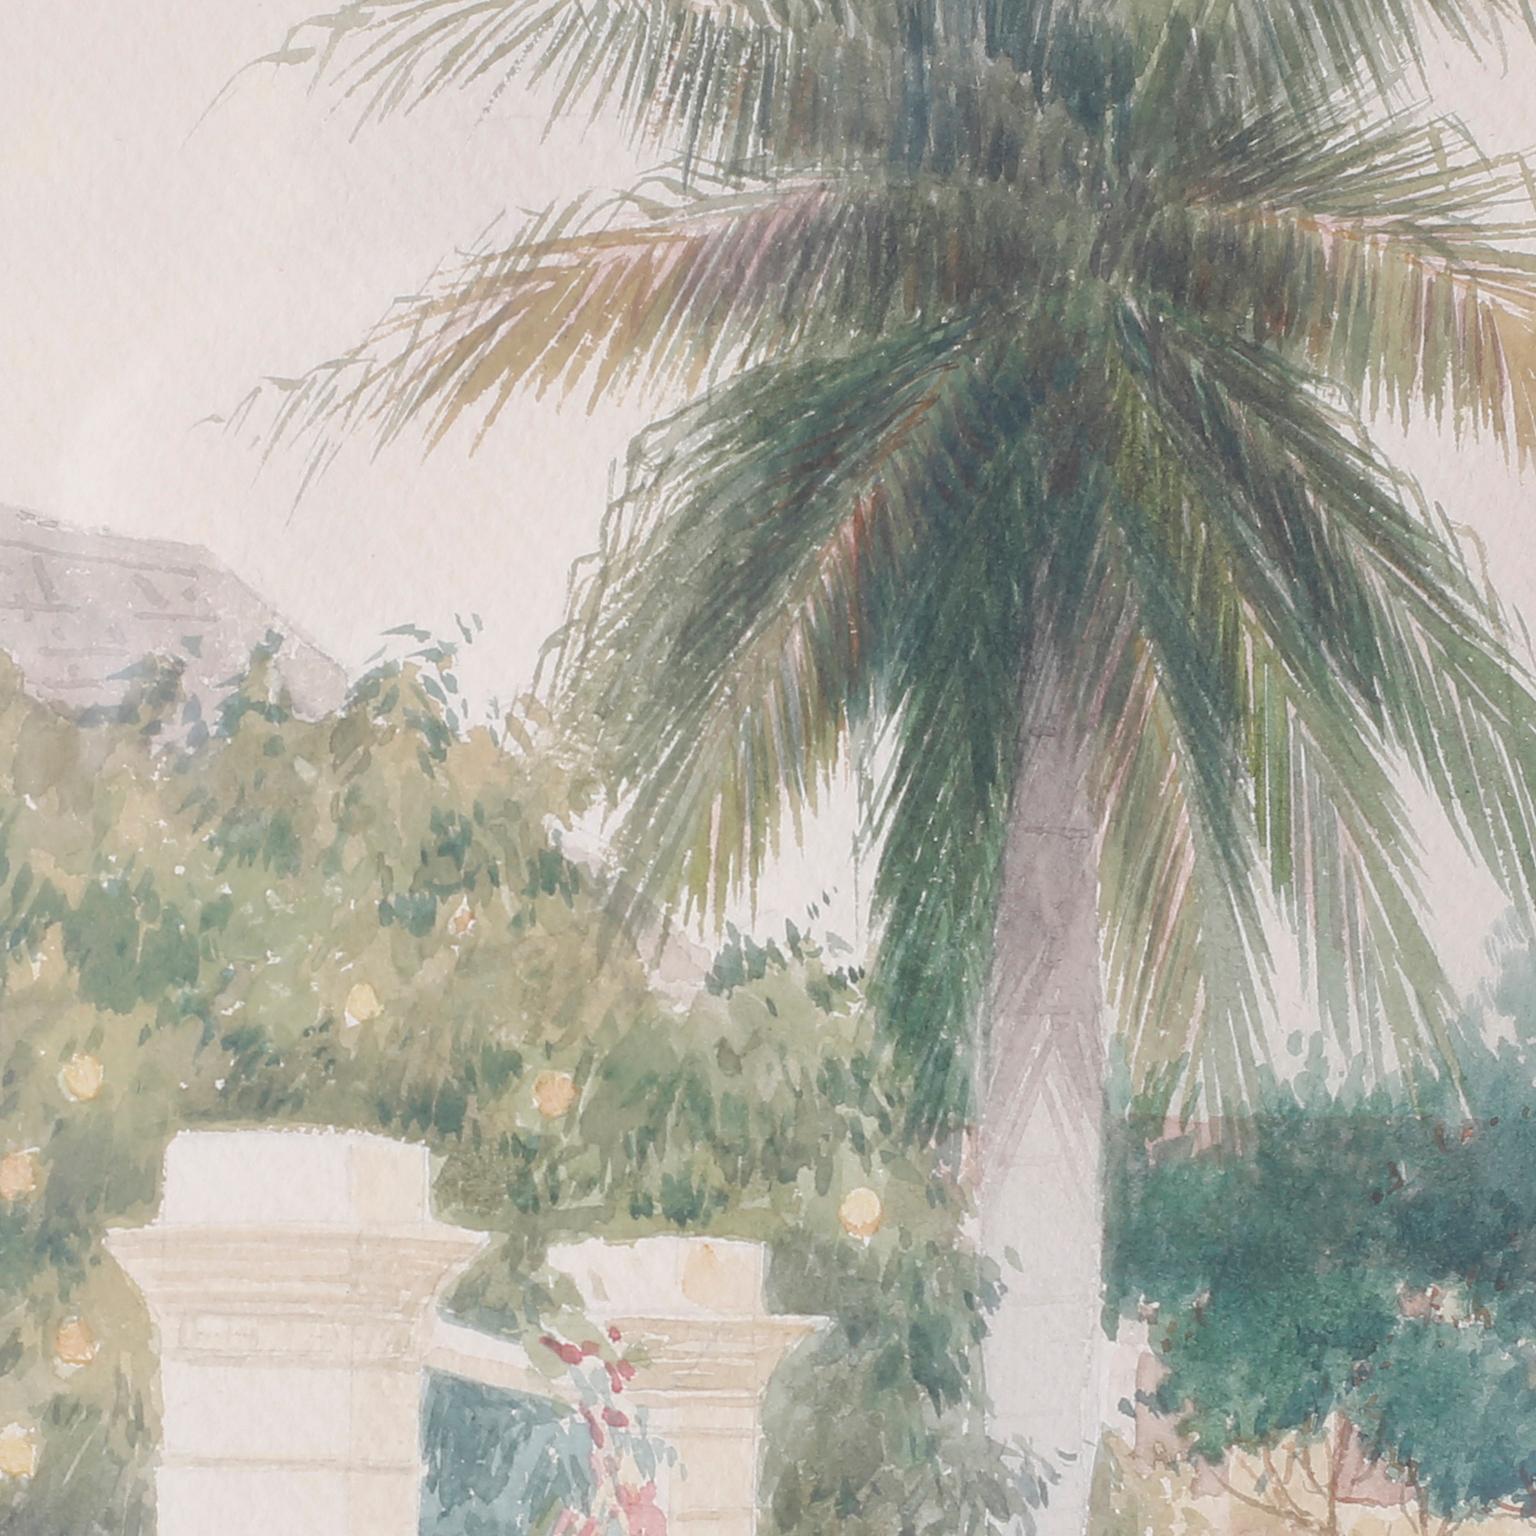 Aquarelle représentant une scène de rue des Bahamas, probablement à Nassau. Complet avec une femme portant un paquet, un homme dans un chariot, des palmiers, une maison, des portes et une ambiance chaleureuse et paisible. Signé Hartwell Leon